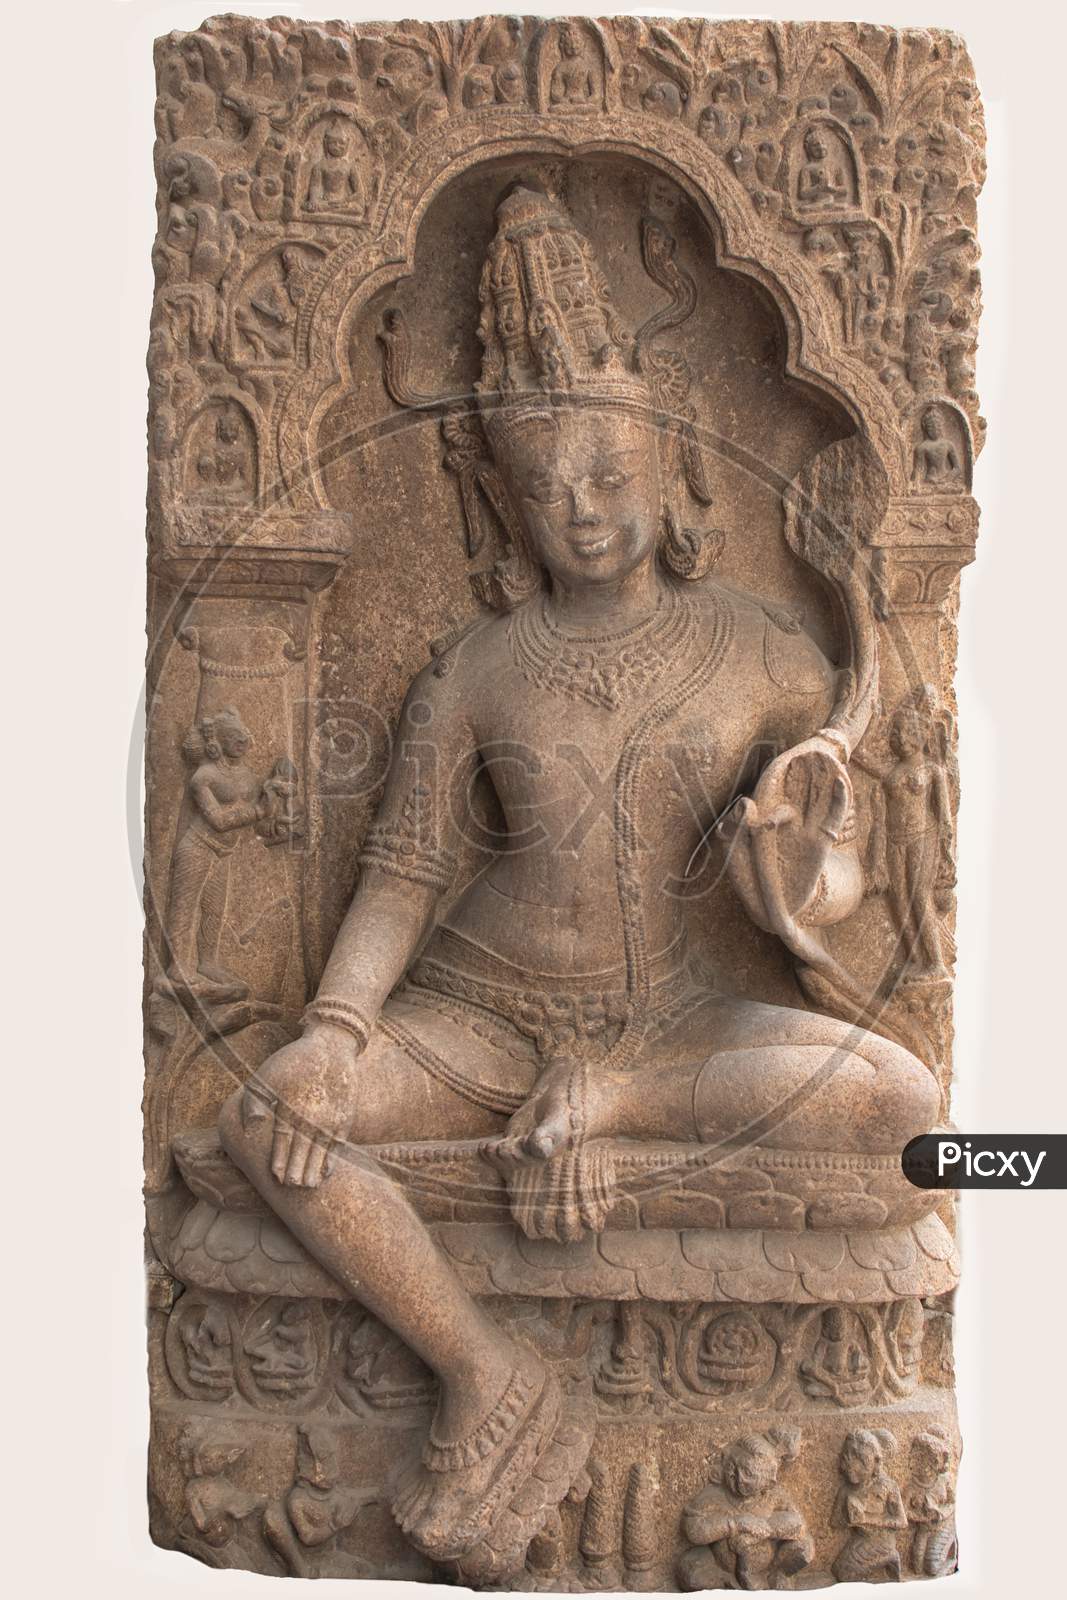 Archaeological Sculpture Of Avalokitesvara From Indian Mythology